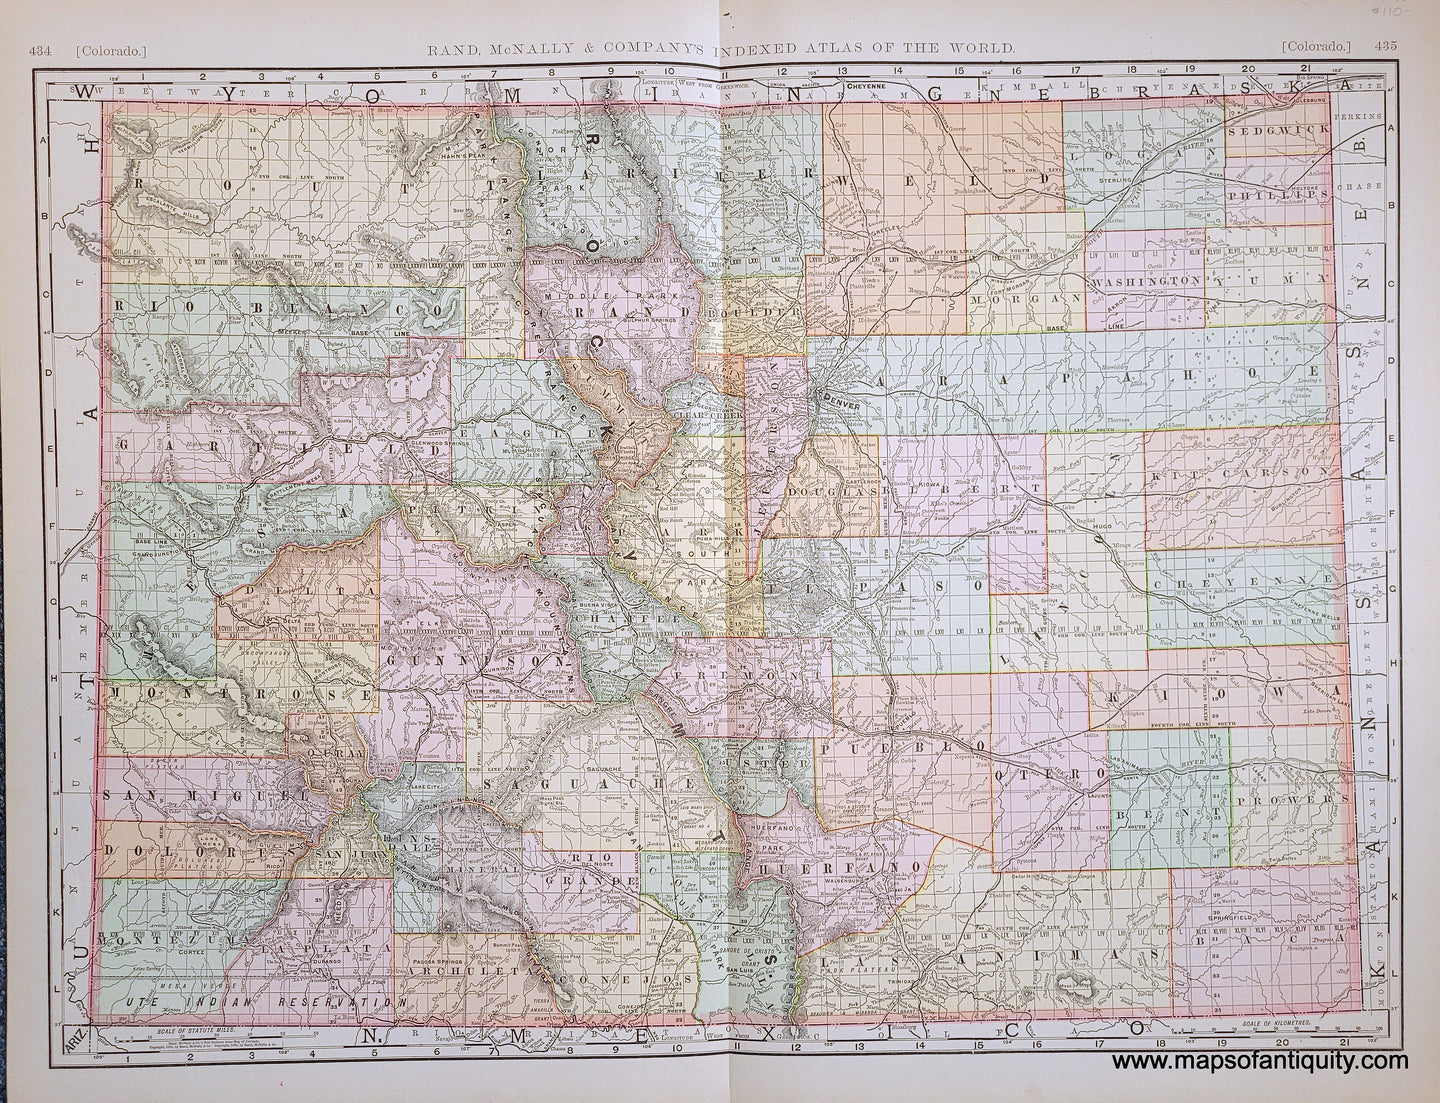 Genuine-Antique-Map-Colorado-Colorado--1898-Rand-McNally-Maps-Of-Antiquity-1800s-19th-century